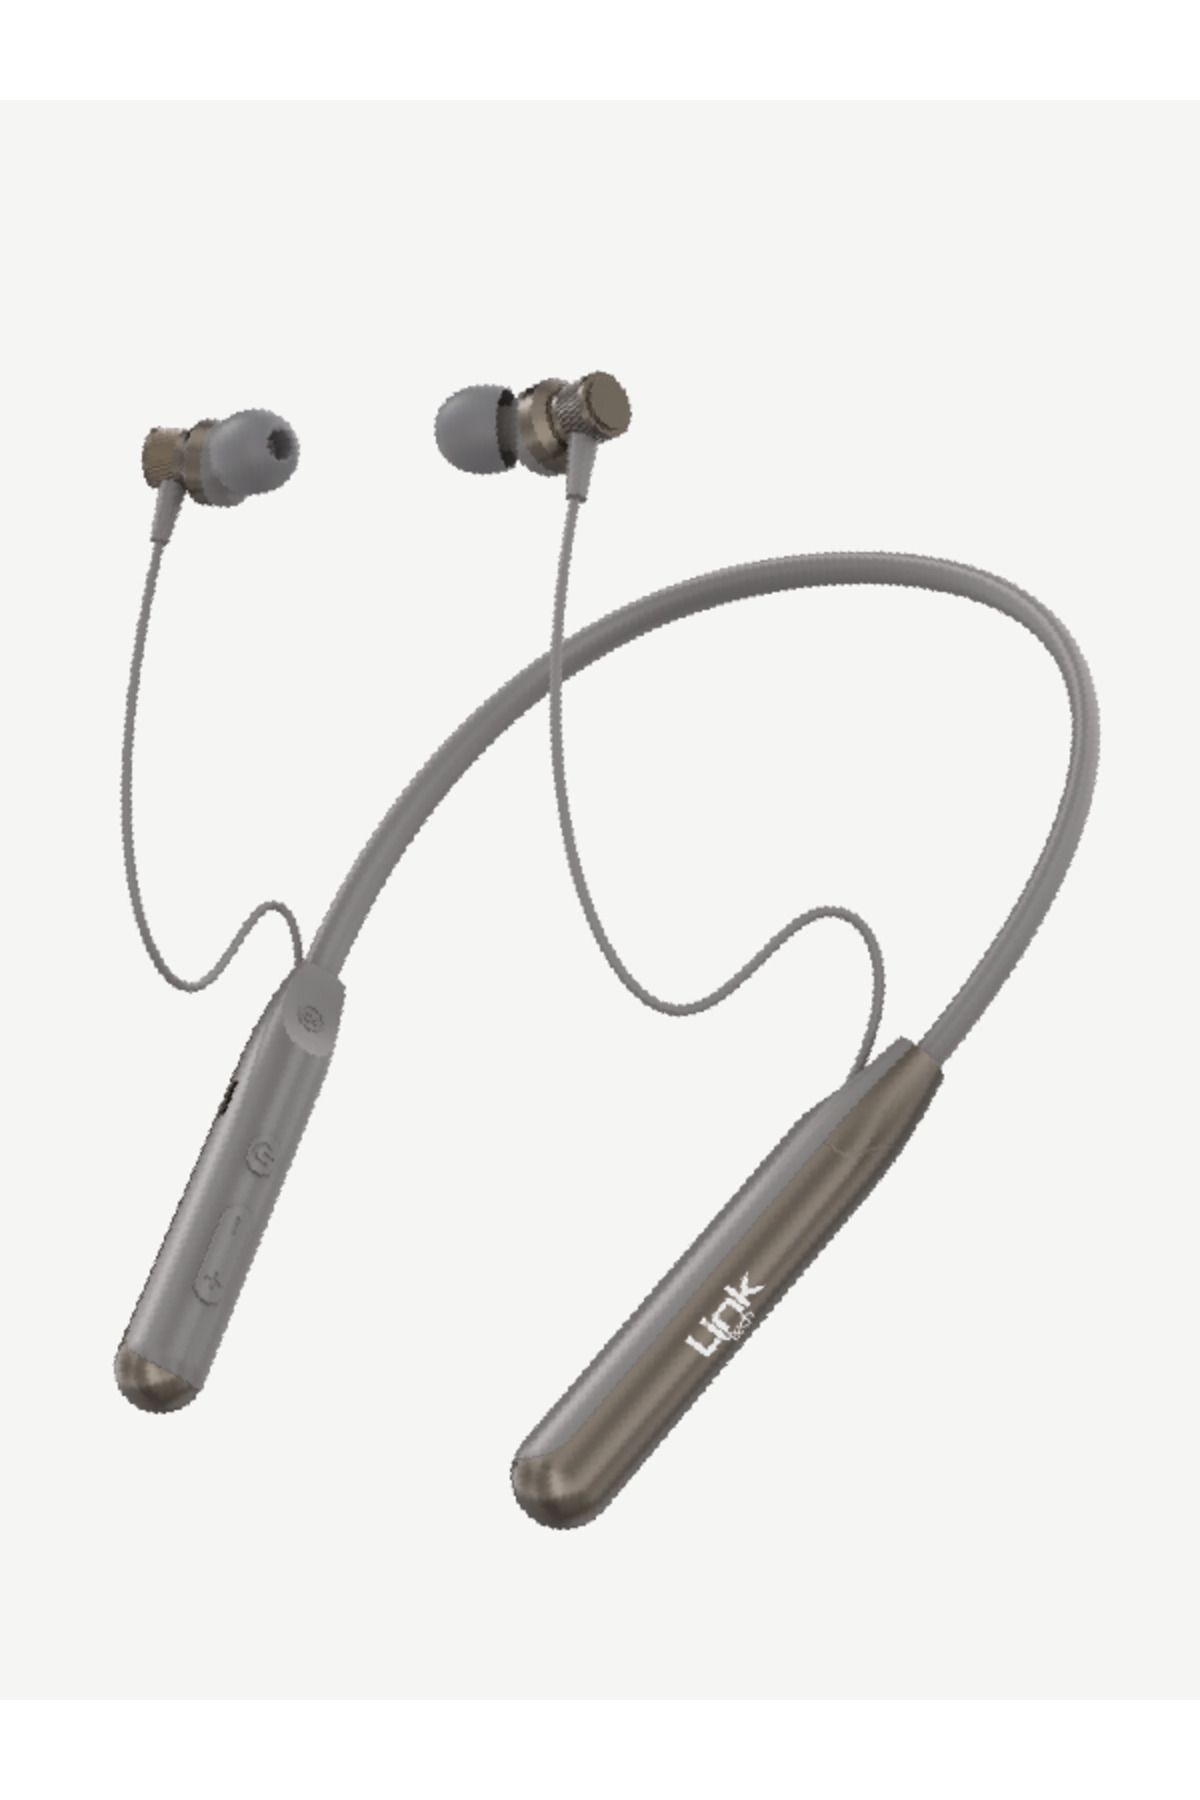 Linktech H993 Boyun Askılı Kulak Içi Bluetooth Kulaklık 26 Saat Konuşma